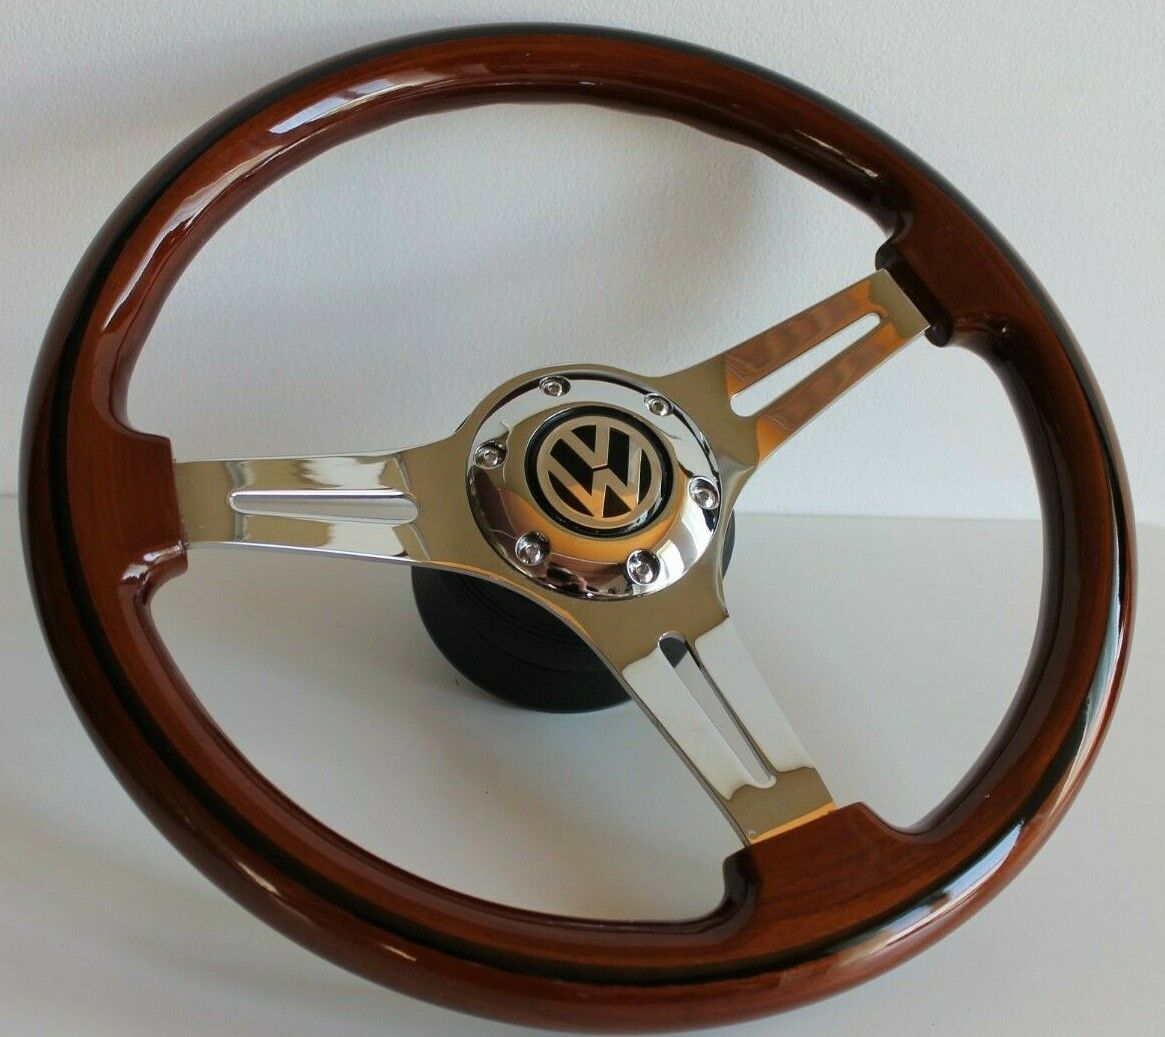 Steering Wheel Wood Chrome fits For VW Bus T4 Caravelle Transporter 96-03'